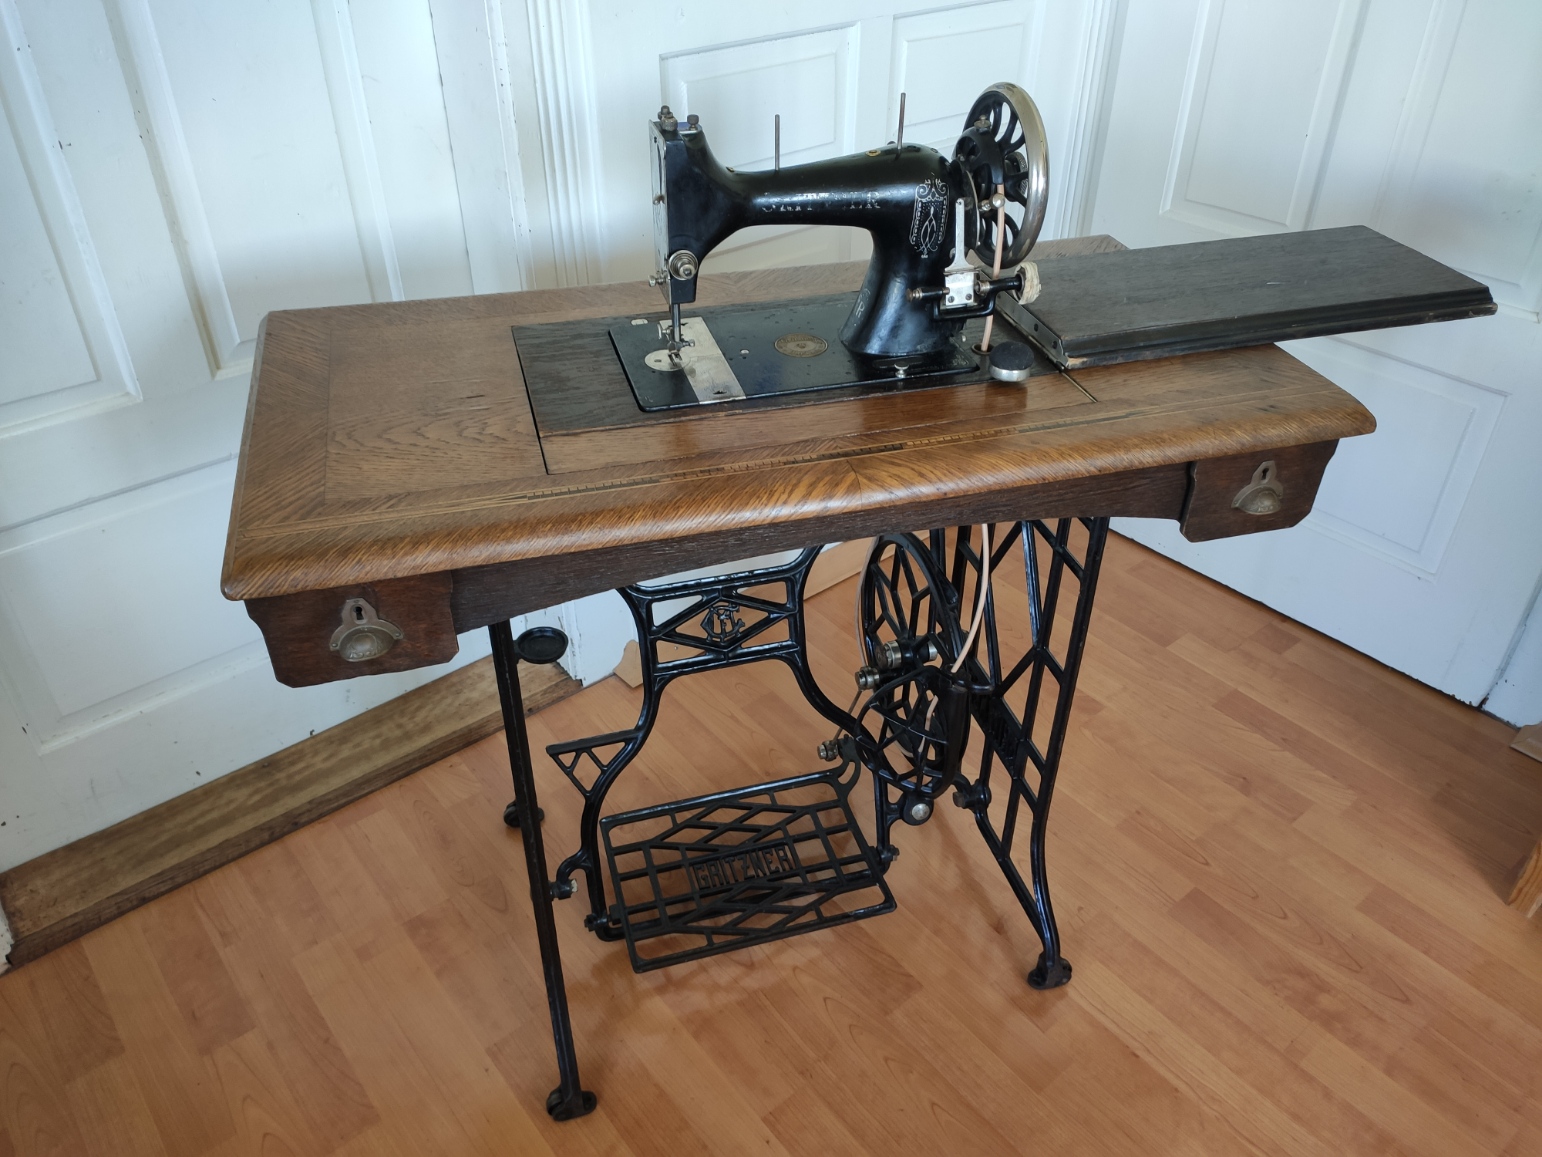 Sewing machine - Wikipedia